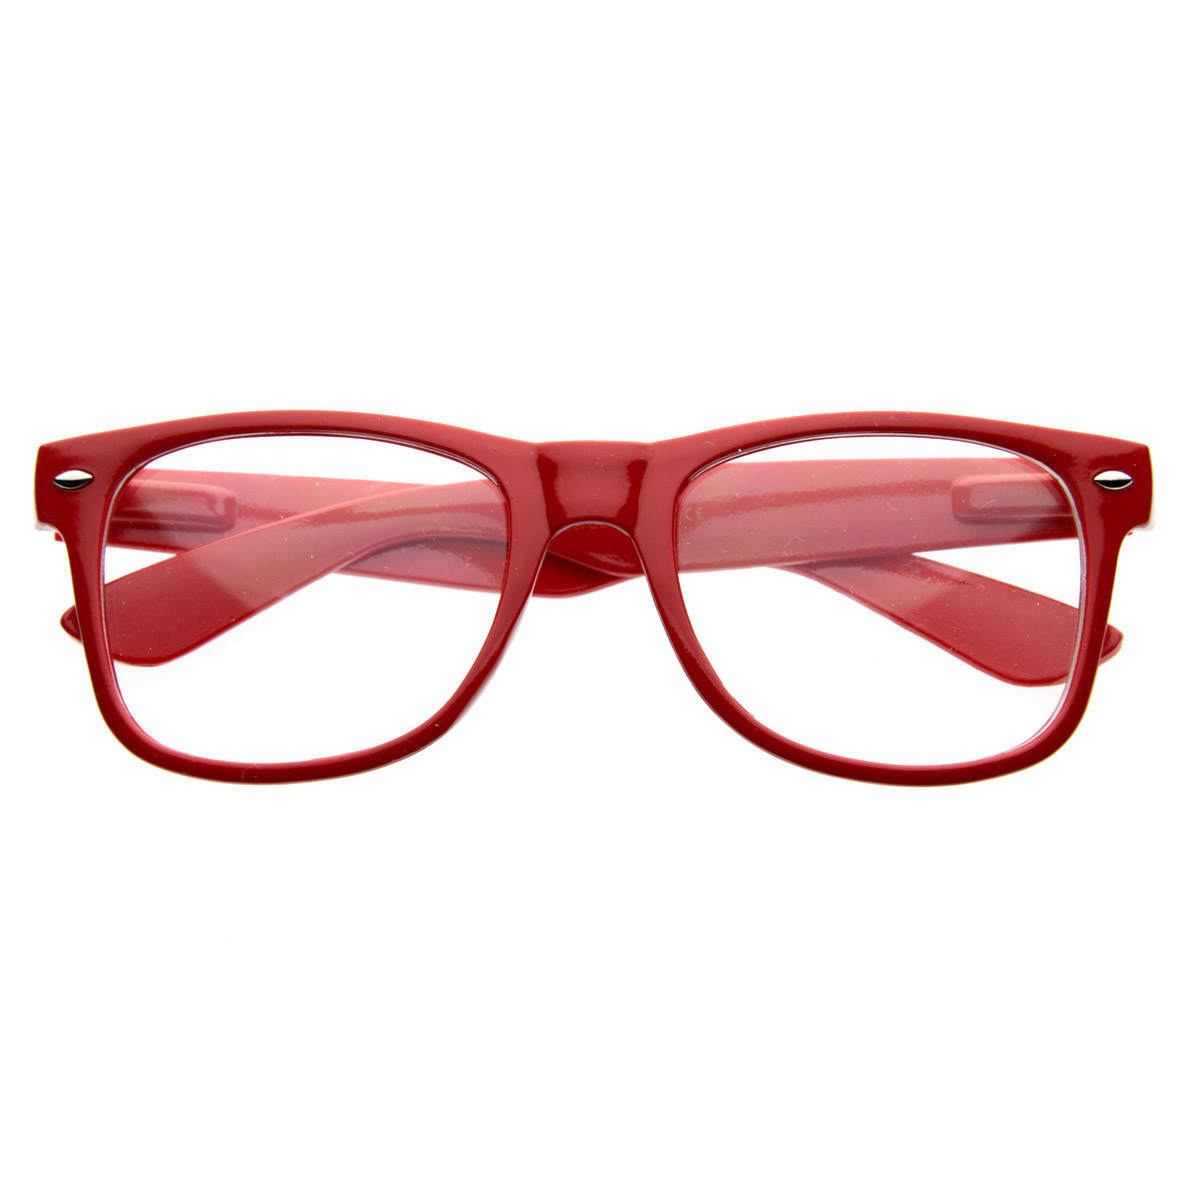 Standard Retro Clear Lens Nerd Geek Assorted Color Horned Rim Glasses - 2873 - Tortoise Shell